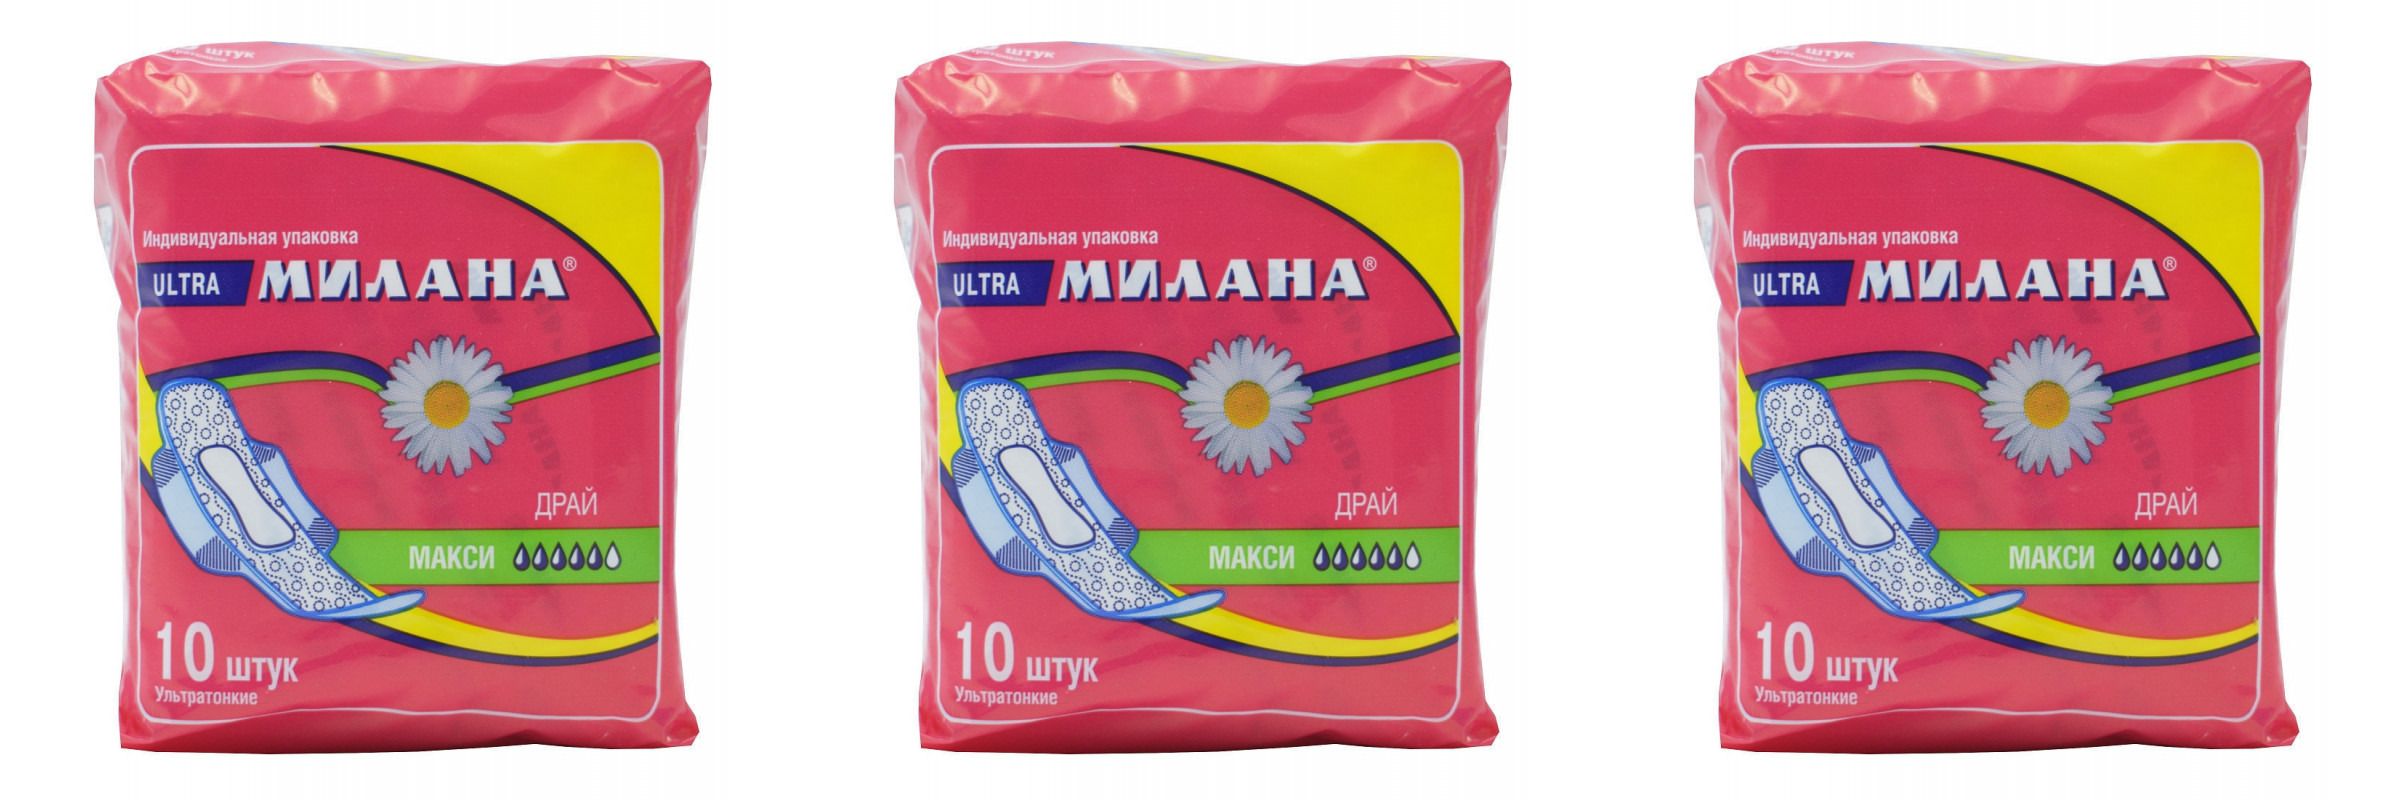 Прокладки Милана Ultra Драй Макси, 10шт, 3 уп прокладки женские милана ultra макси софт 10 шт